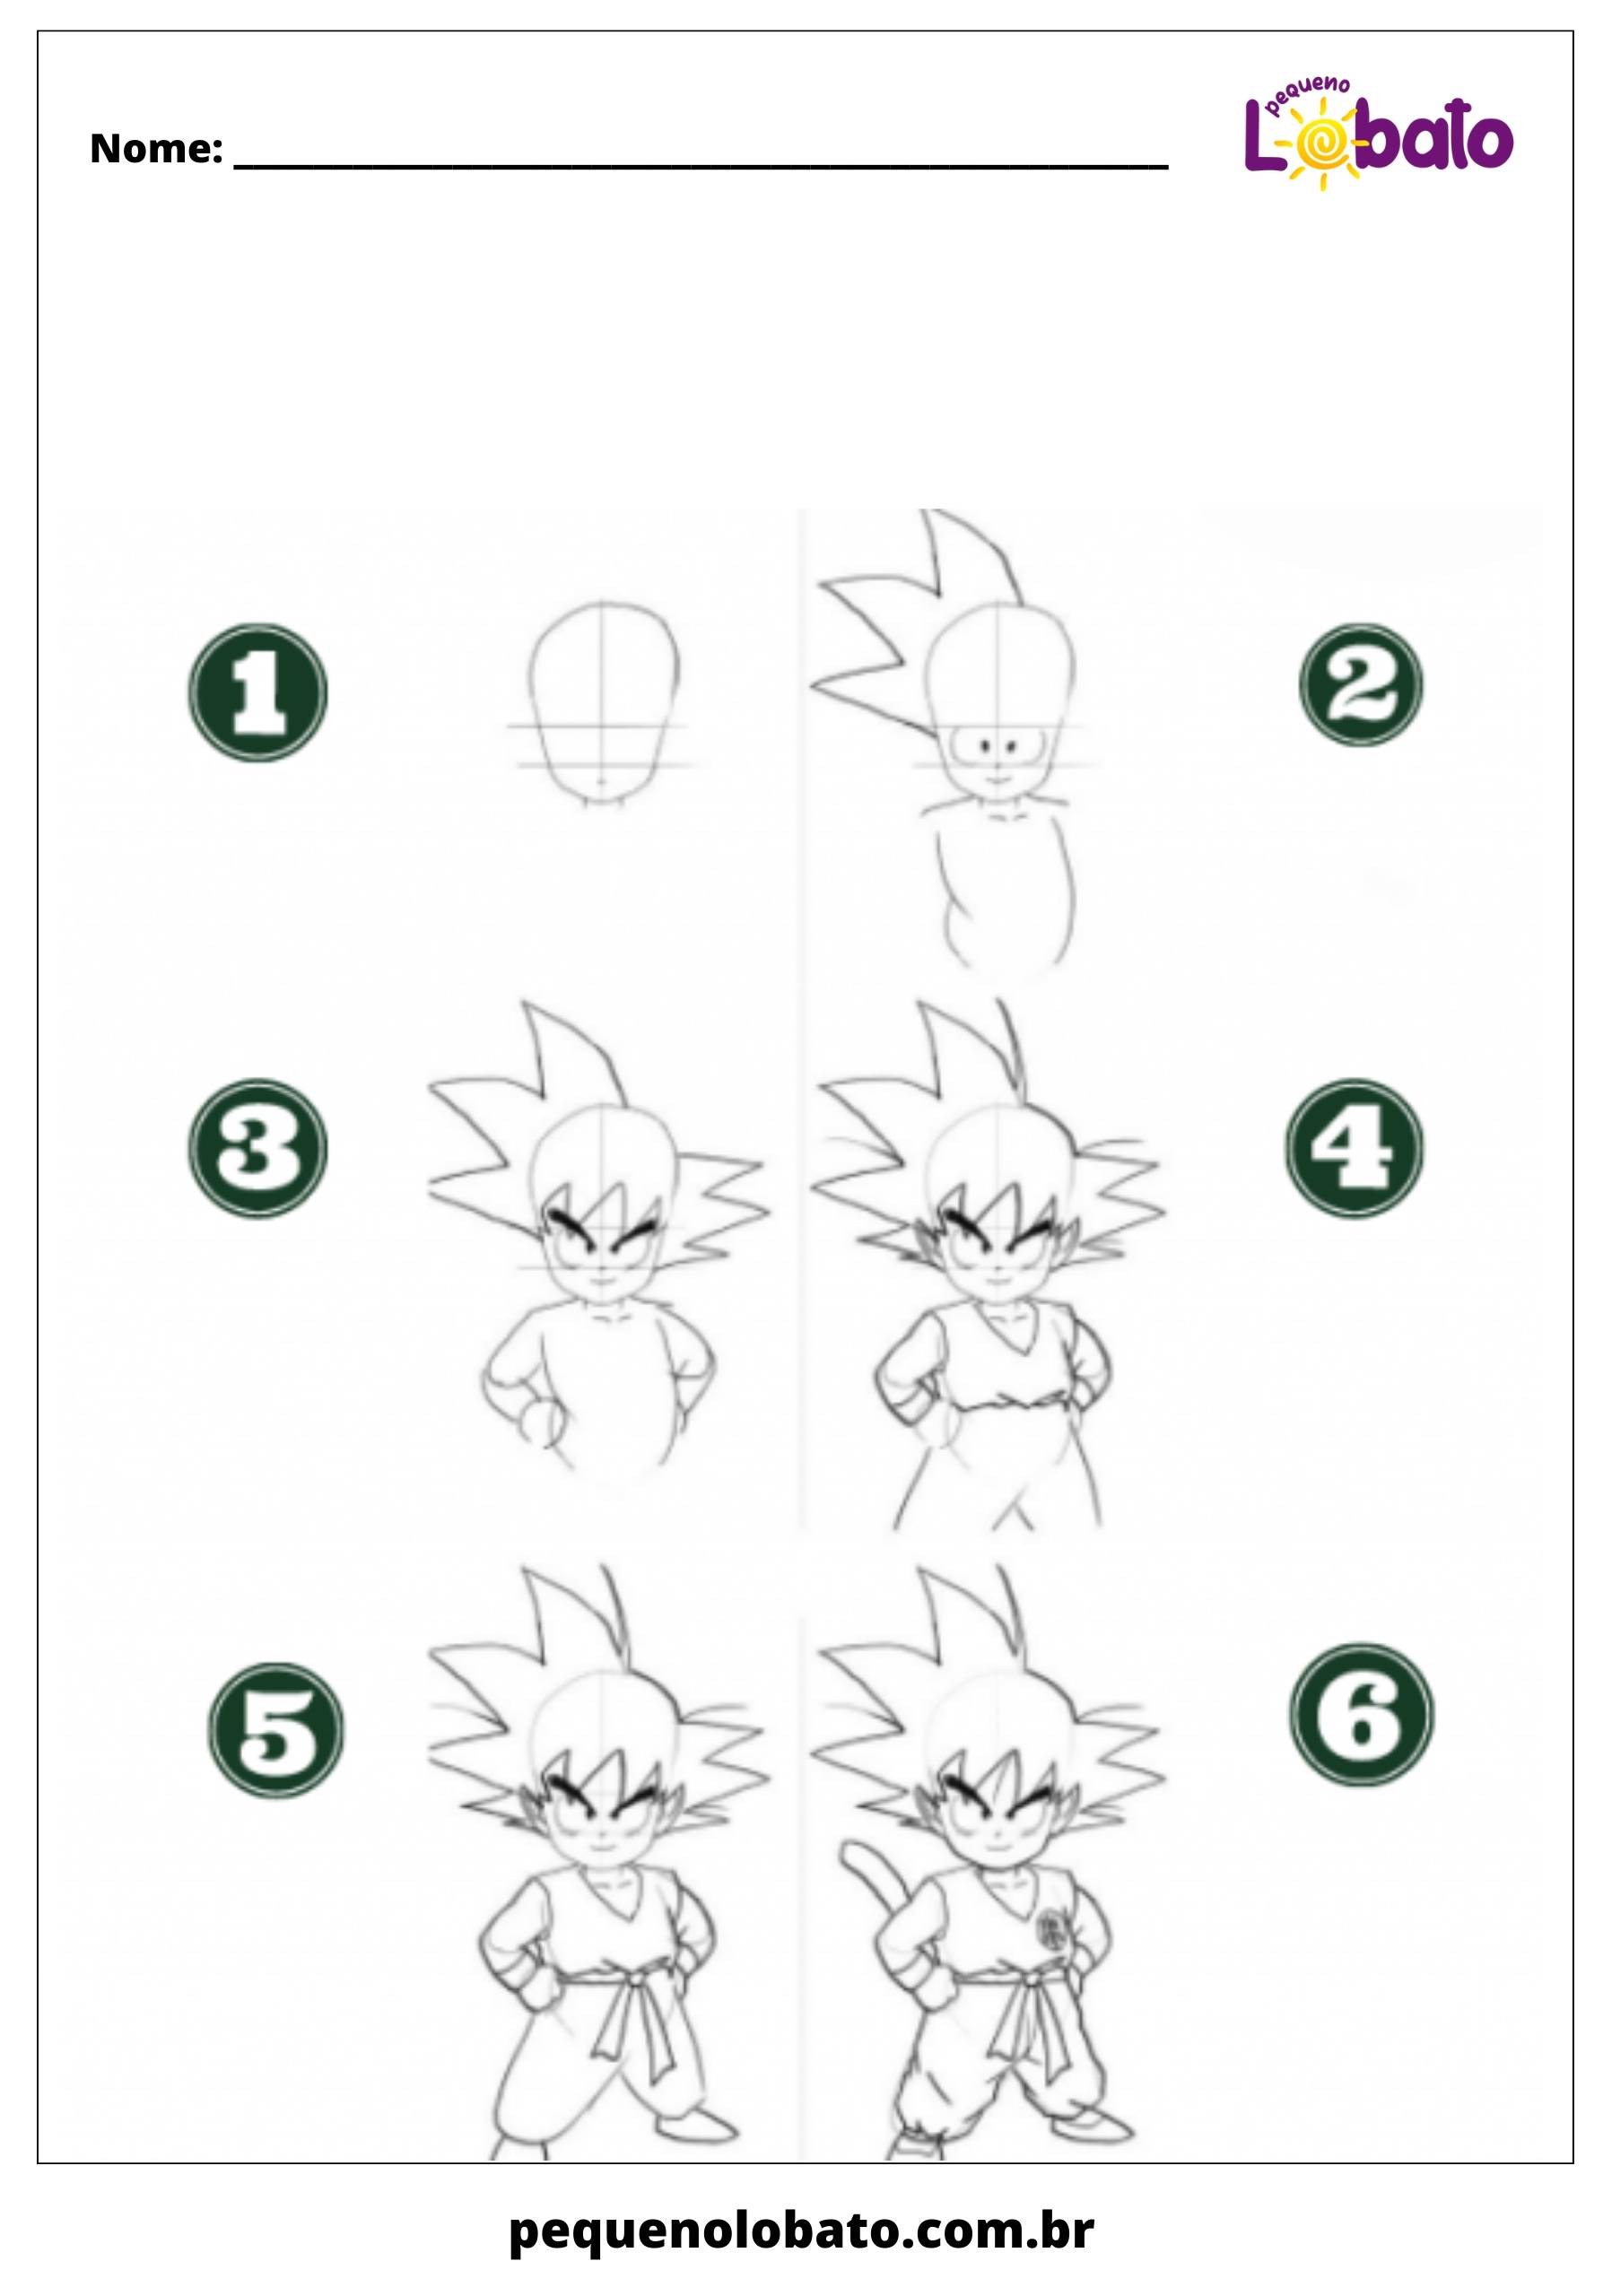 Atividade com o Goku para desenhar